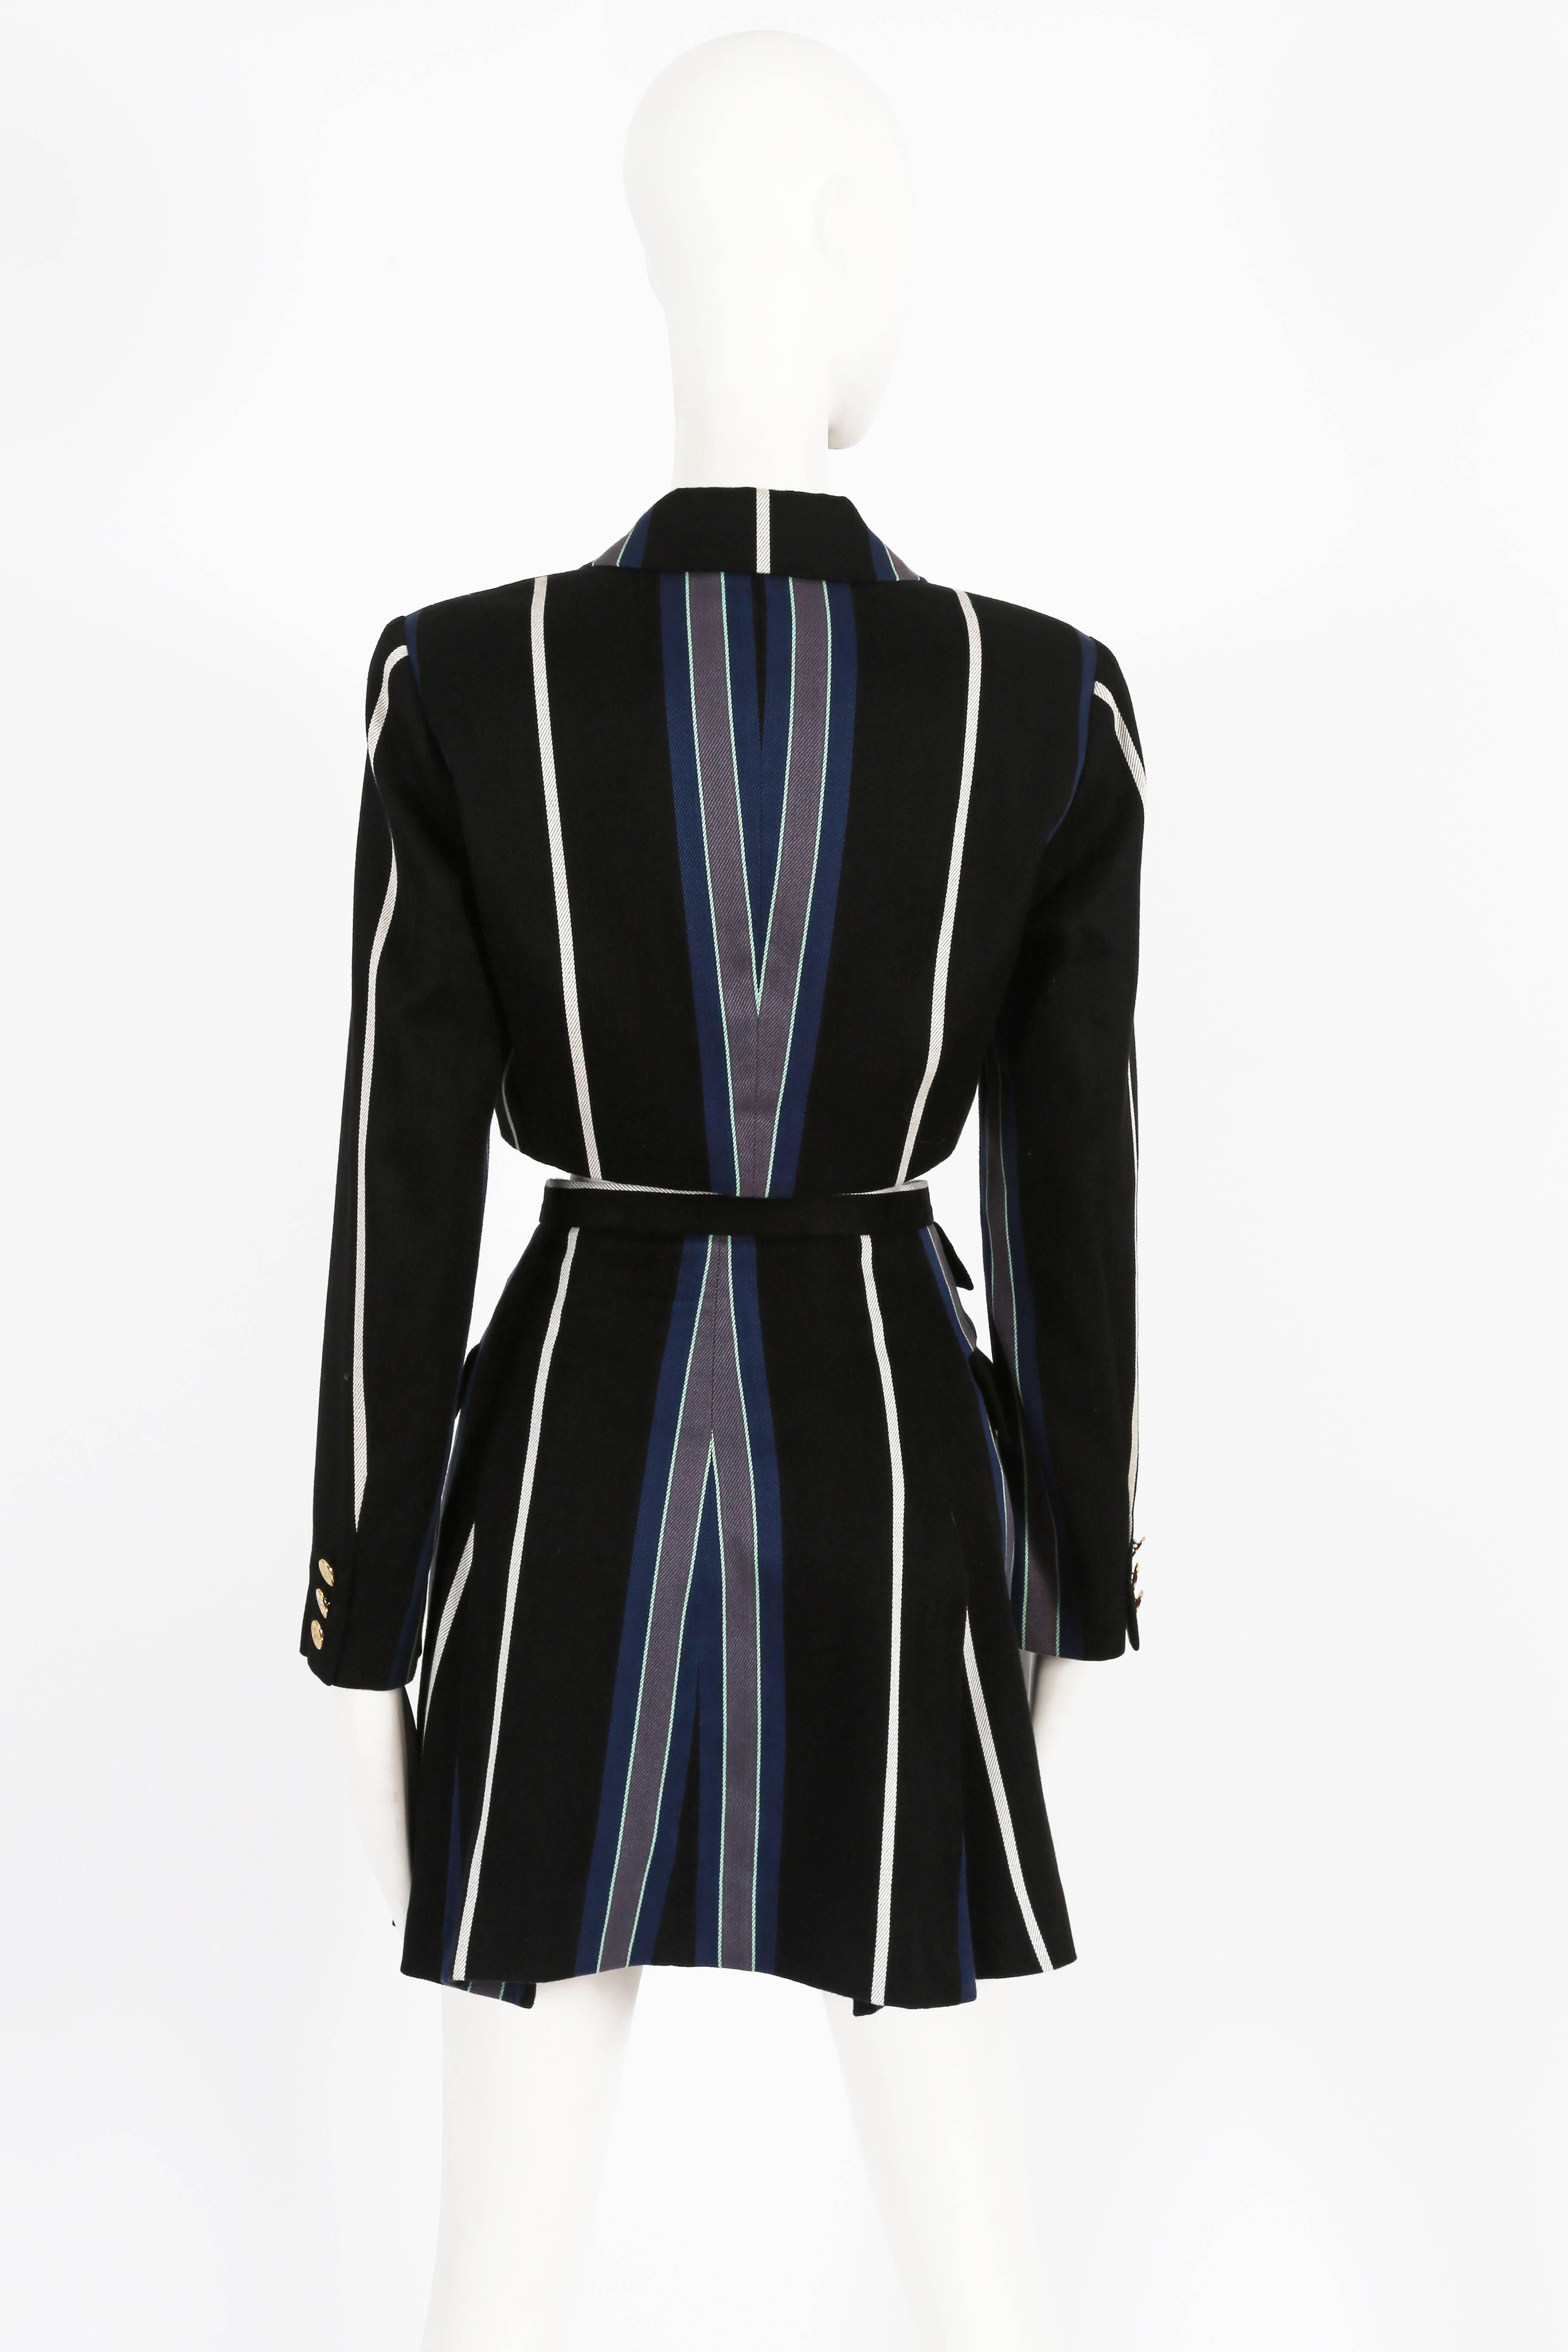 Vivienne Westwood tweed striped skirt suit, circa 1995 1